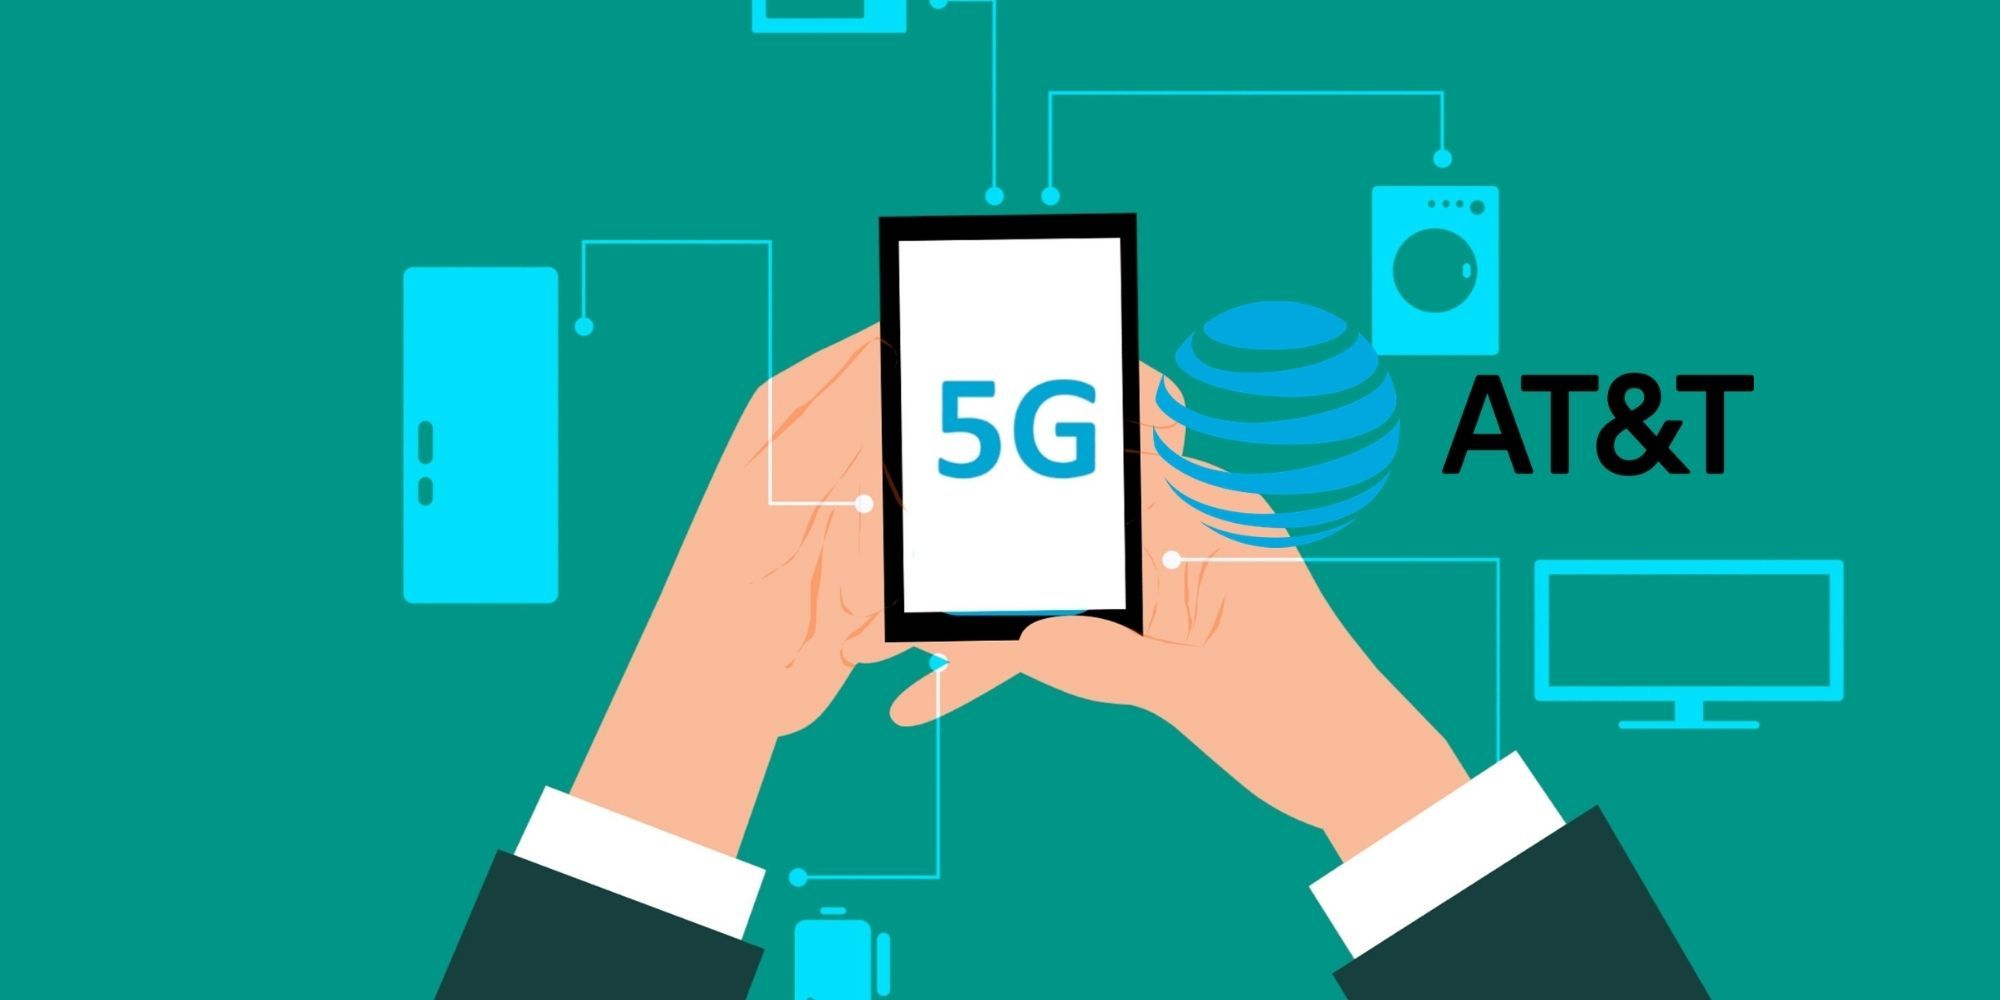 ¿Qué teléfonos funcionarán con el 5G más rápido de AT&T?  Aquí está la lista completa